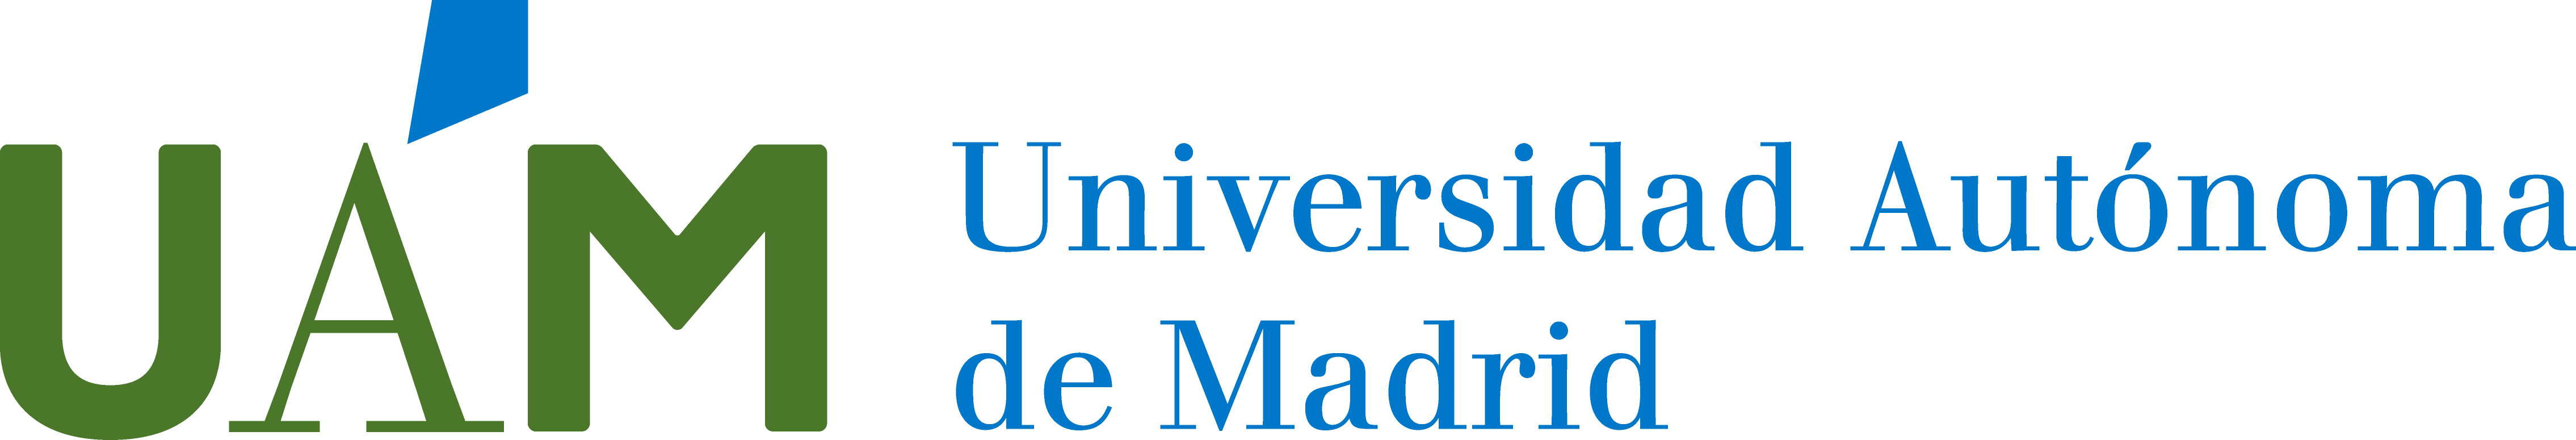 Logo UAM horizontal